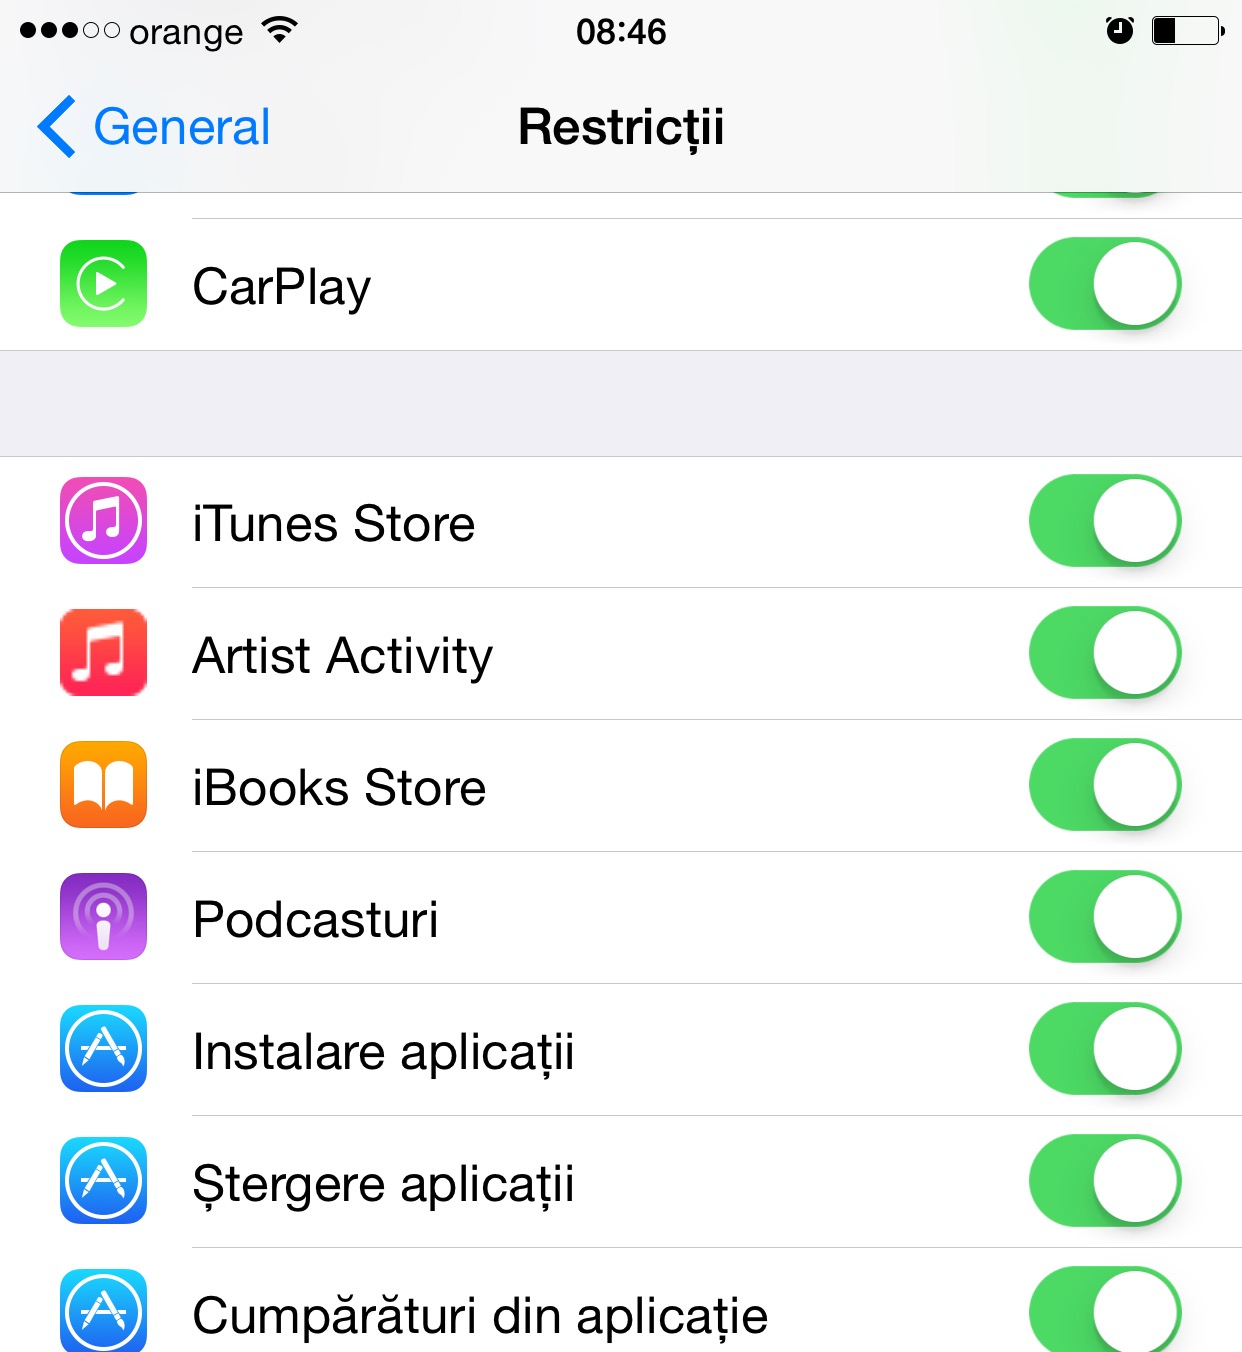 Attività dell'artista su Apple Music iOS 8.4